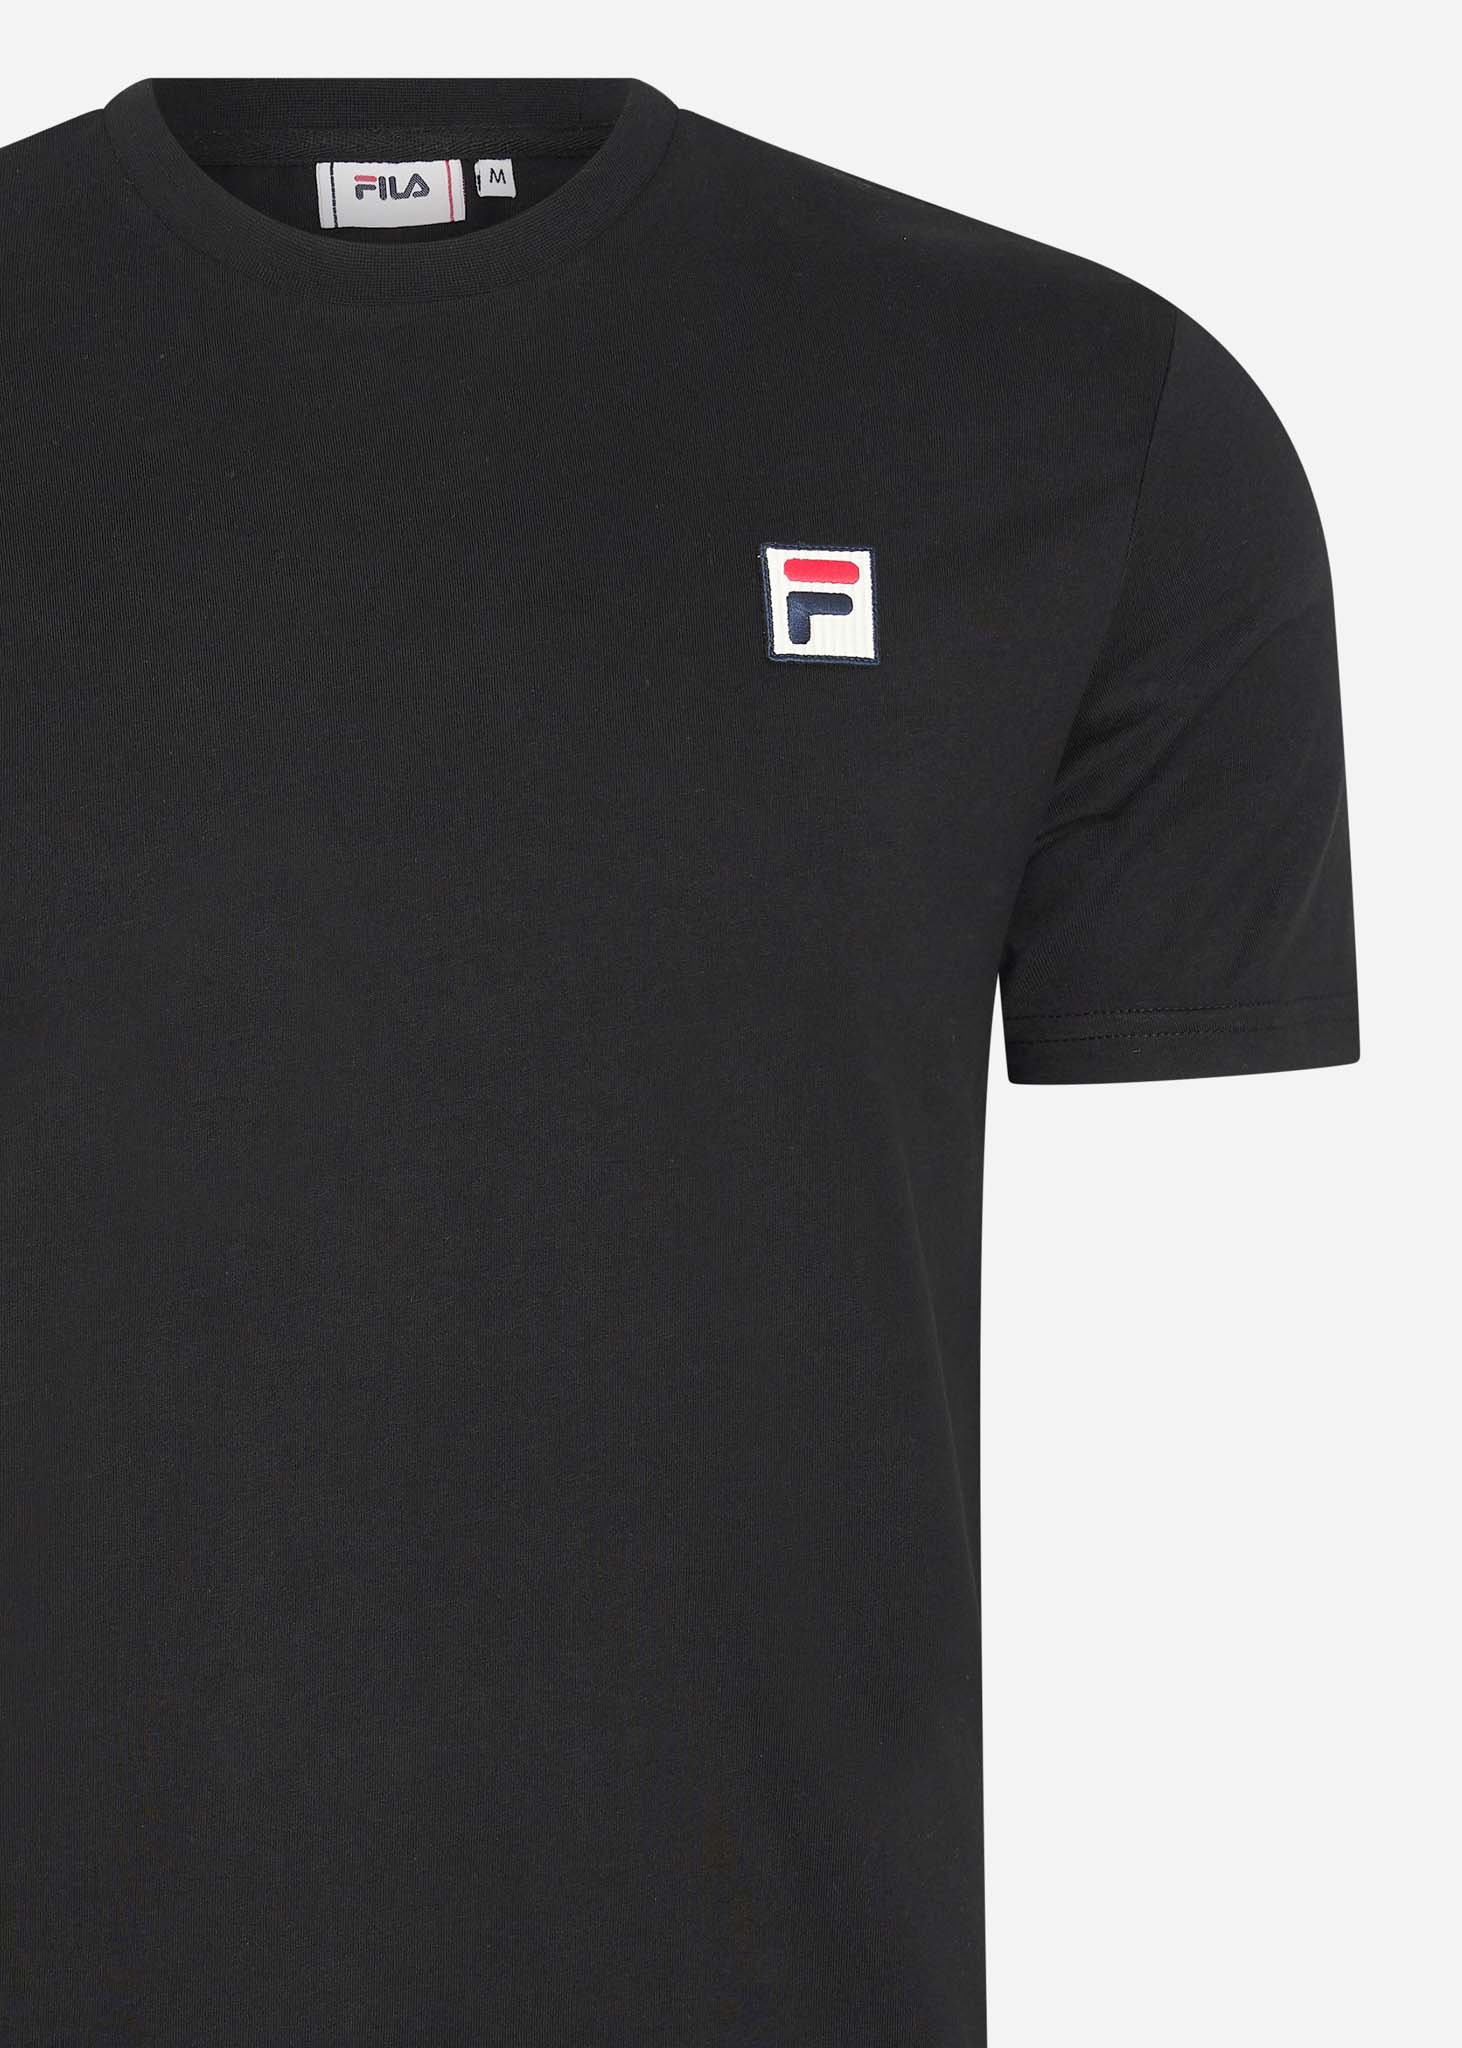 Fila T-shirts  Ledge tee - black 